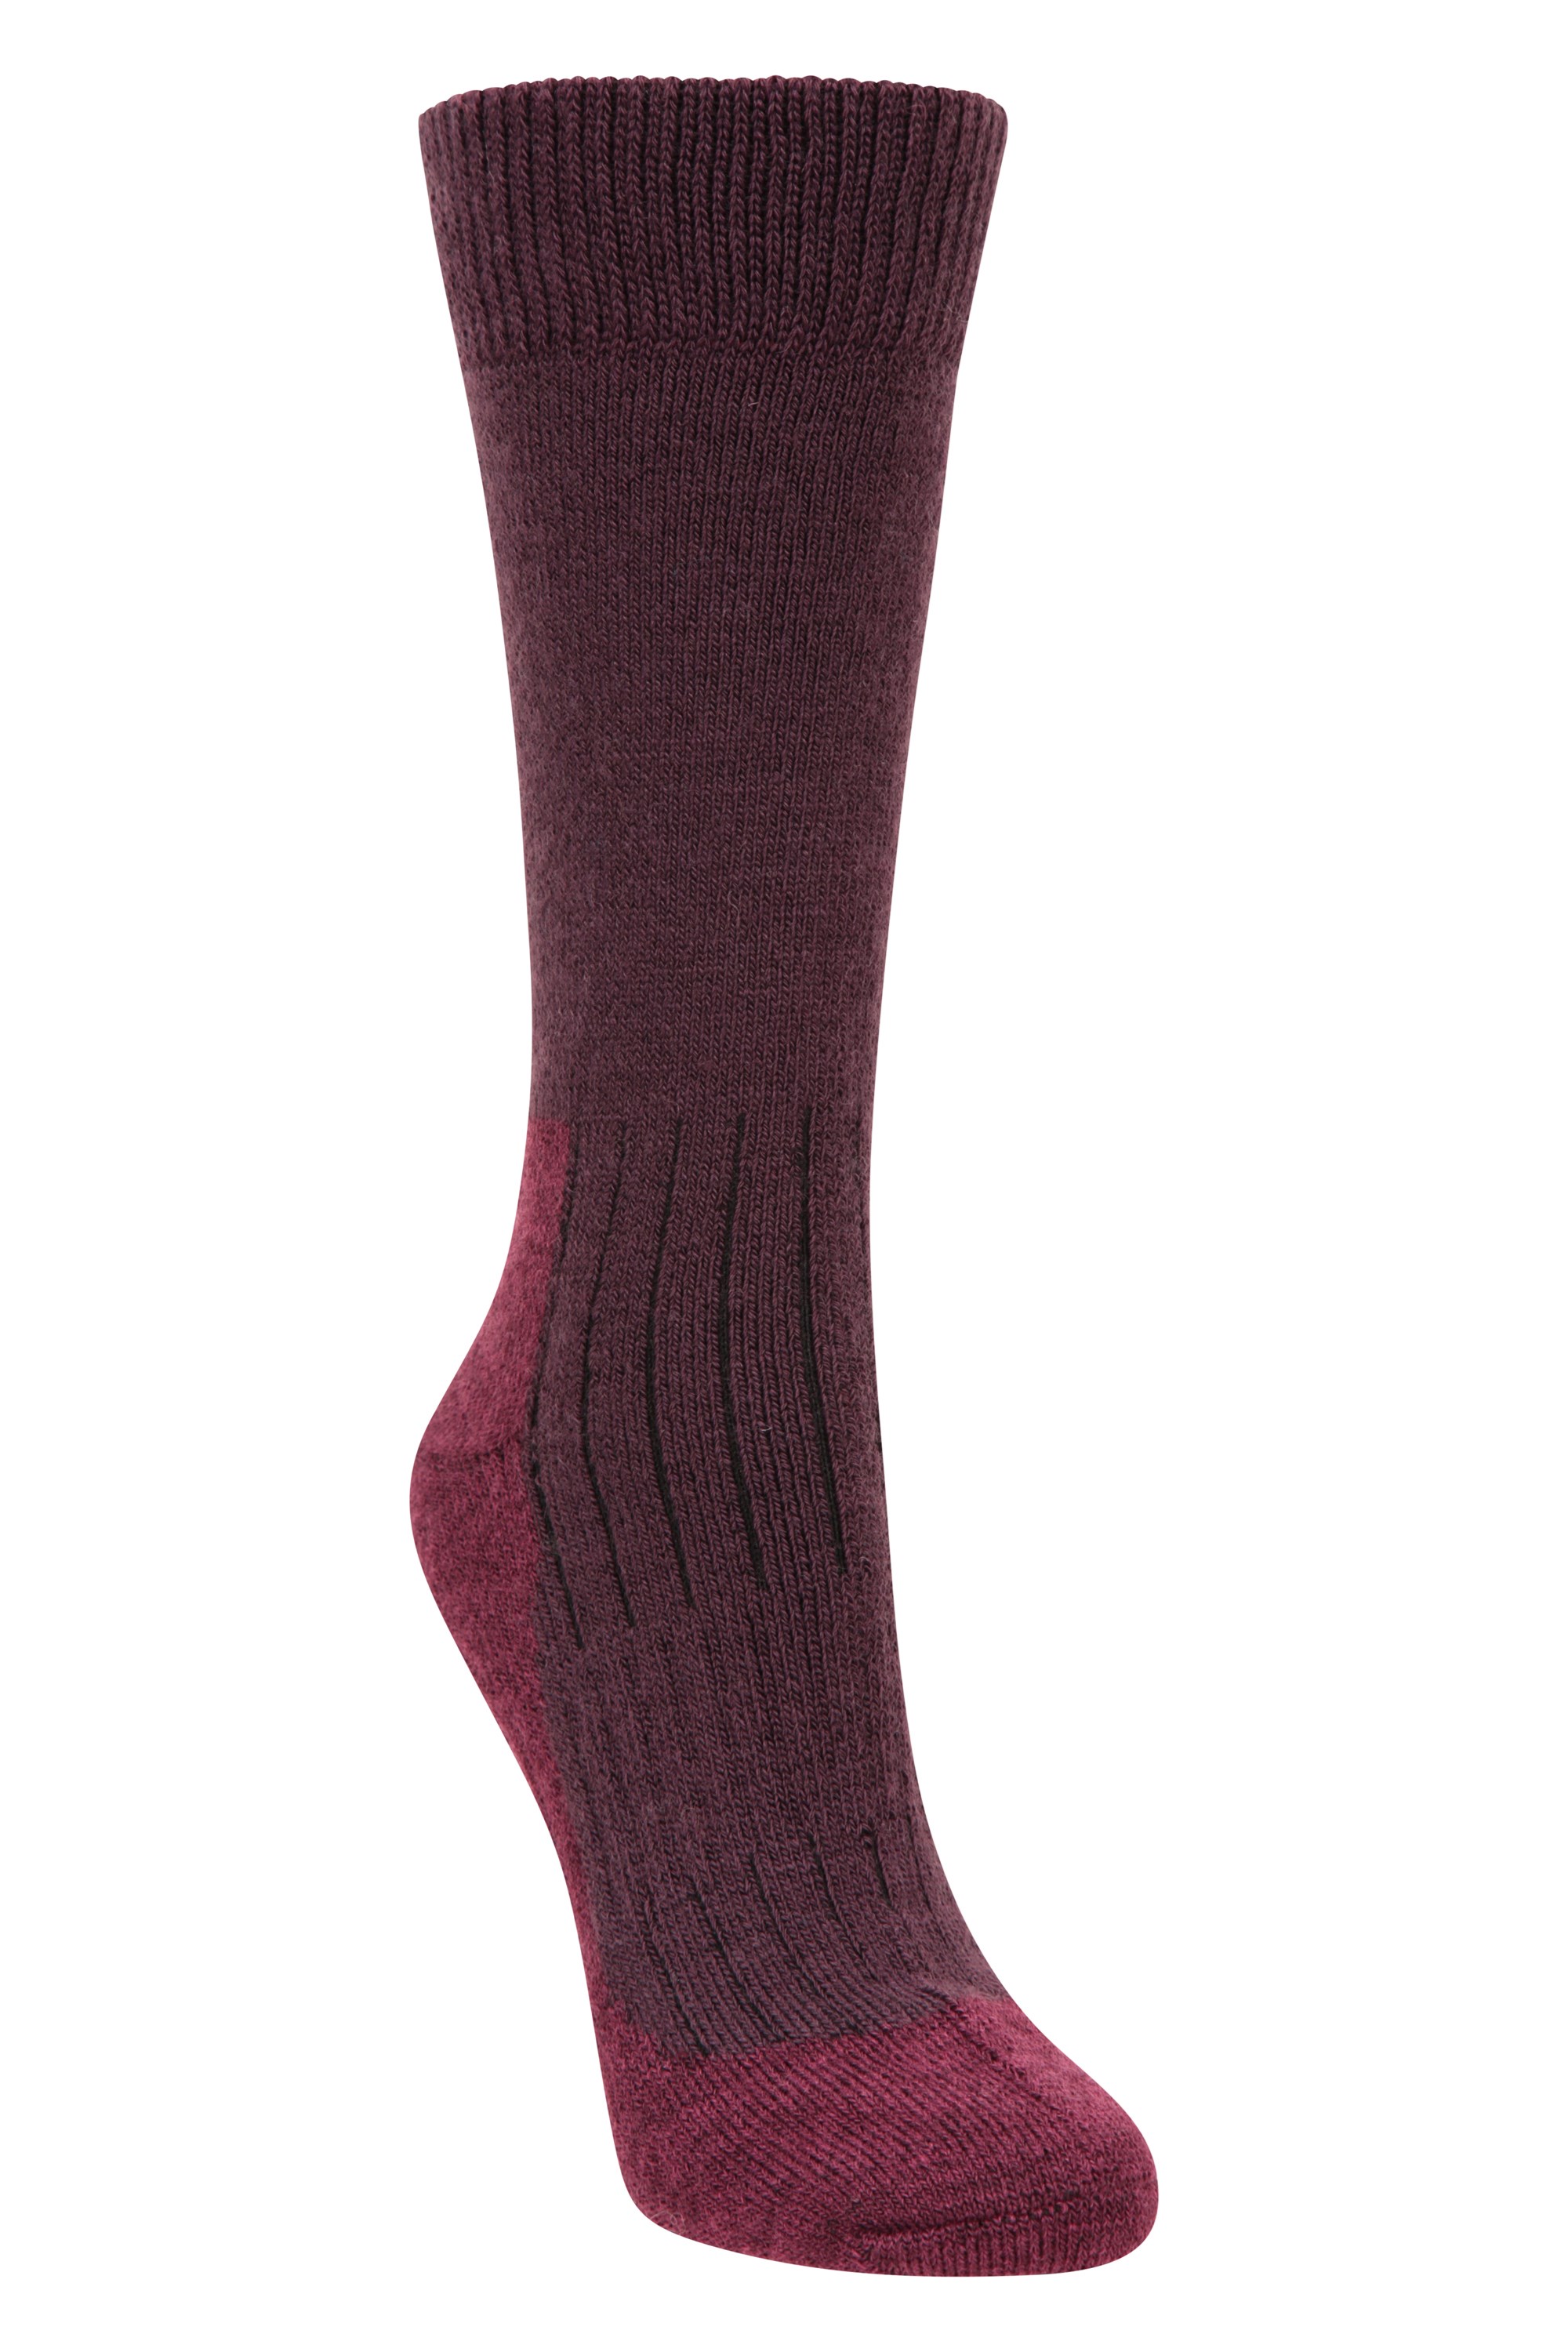 Explorer Womens Merino Thermal Mid-Calf Socks - Pink